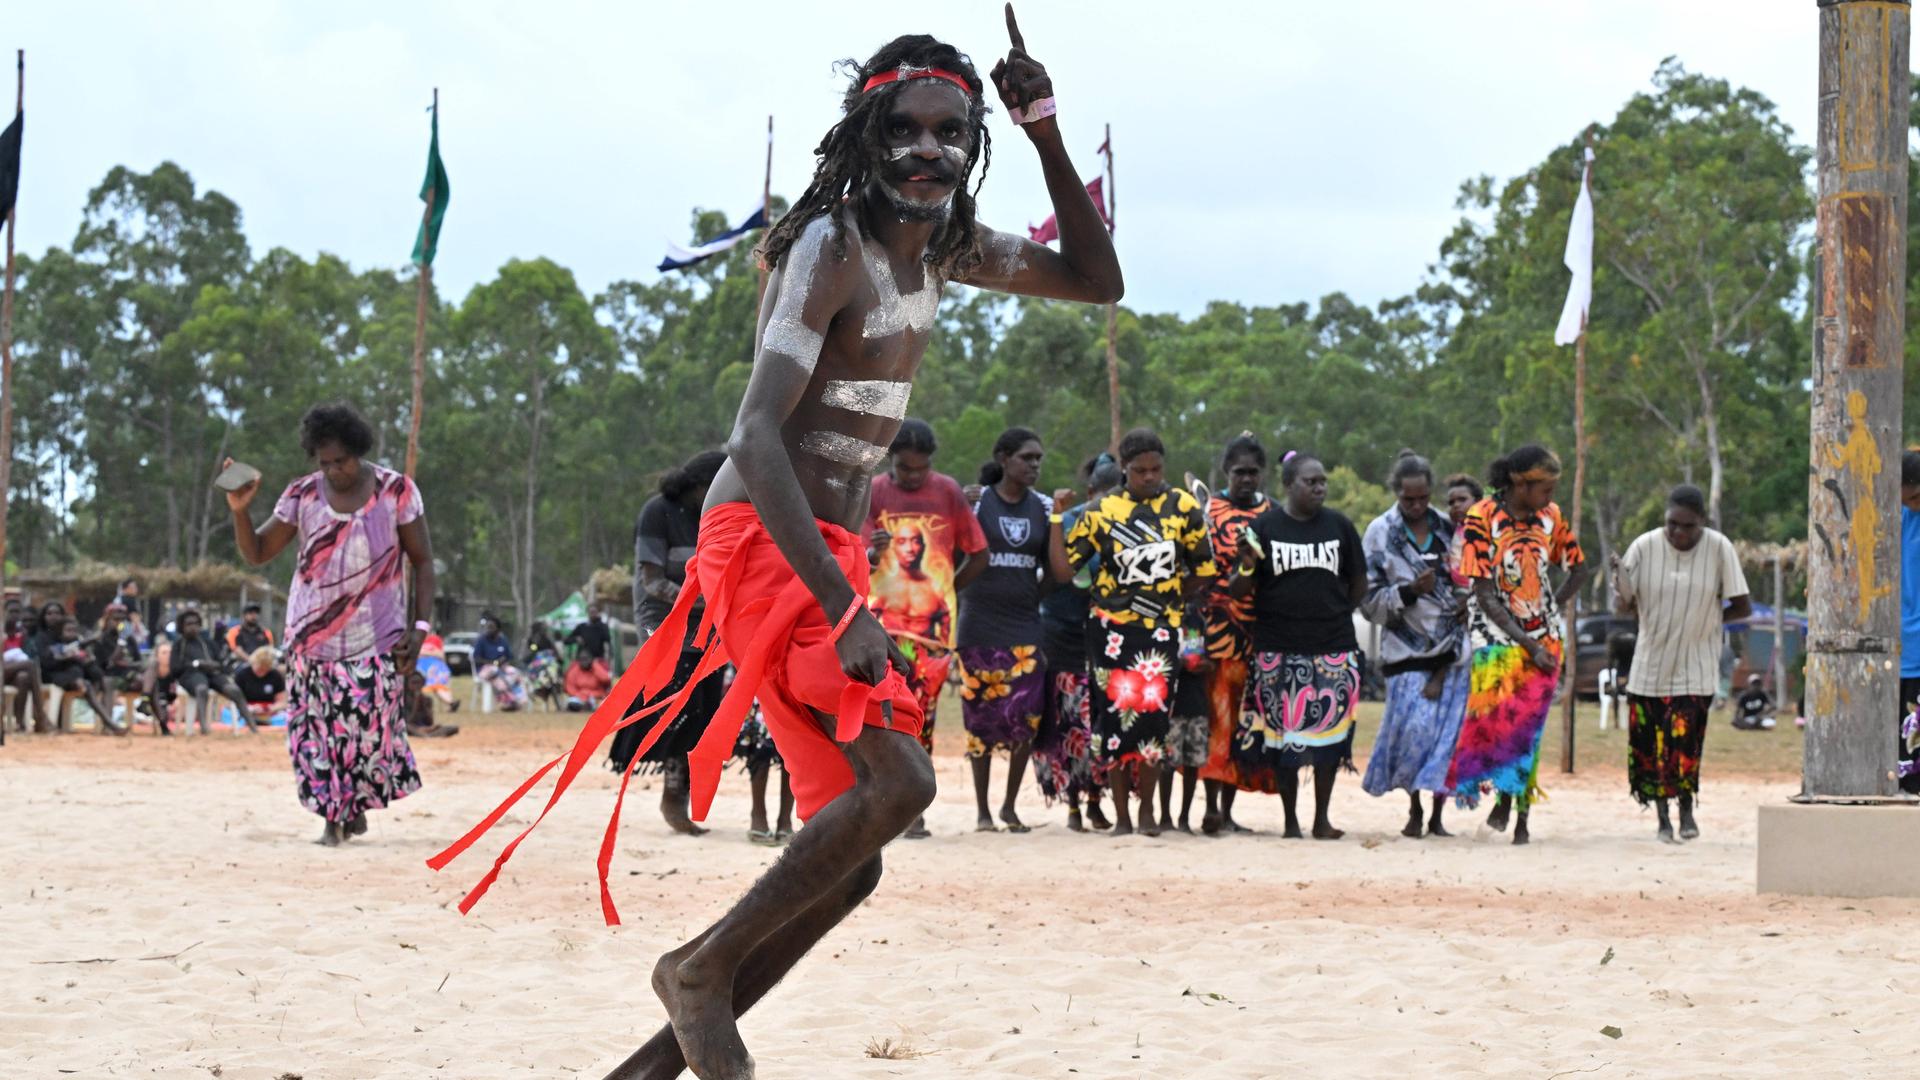 Ein bemalter Mann tanzt in rotem Rock auf einer Sandfläche, im Hintergrund Aboriginee-Frauen.